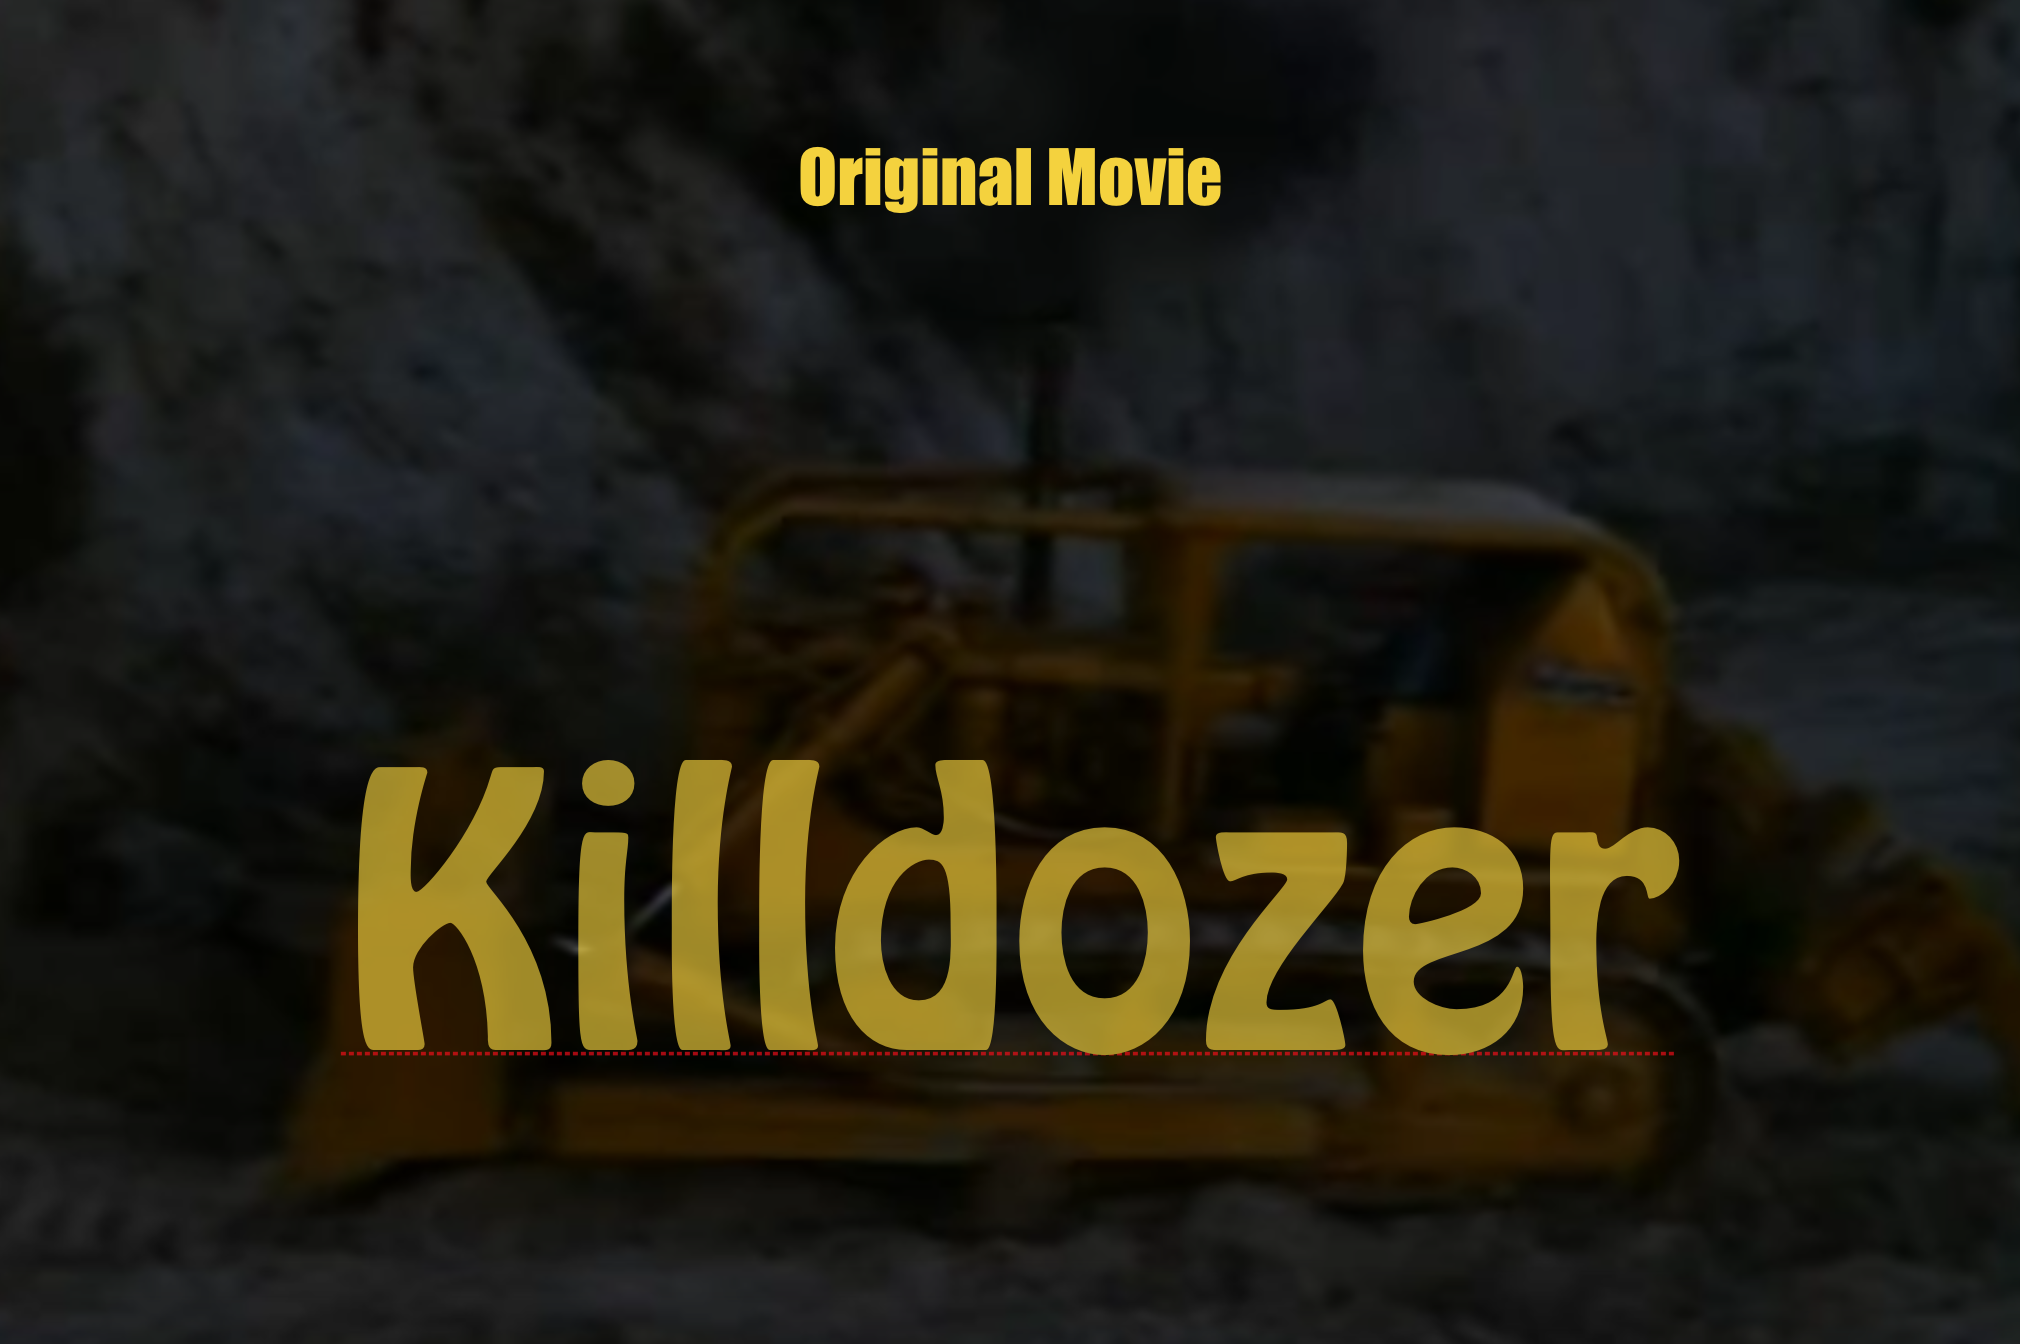 Killdozer The Original Movie Nosleepatall 3710